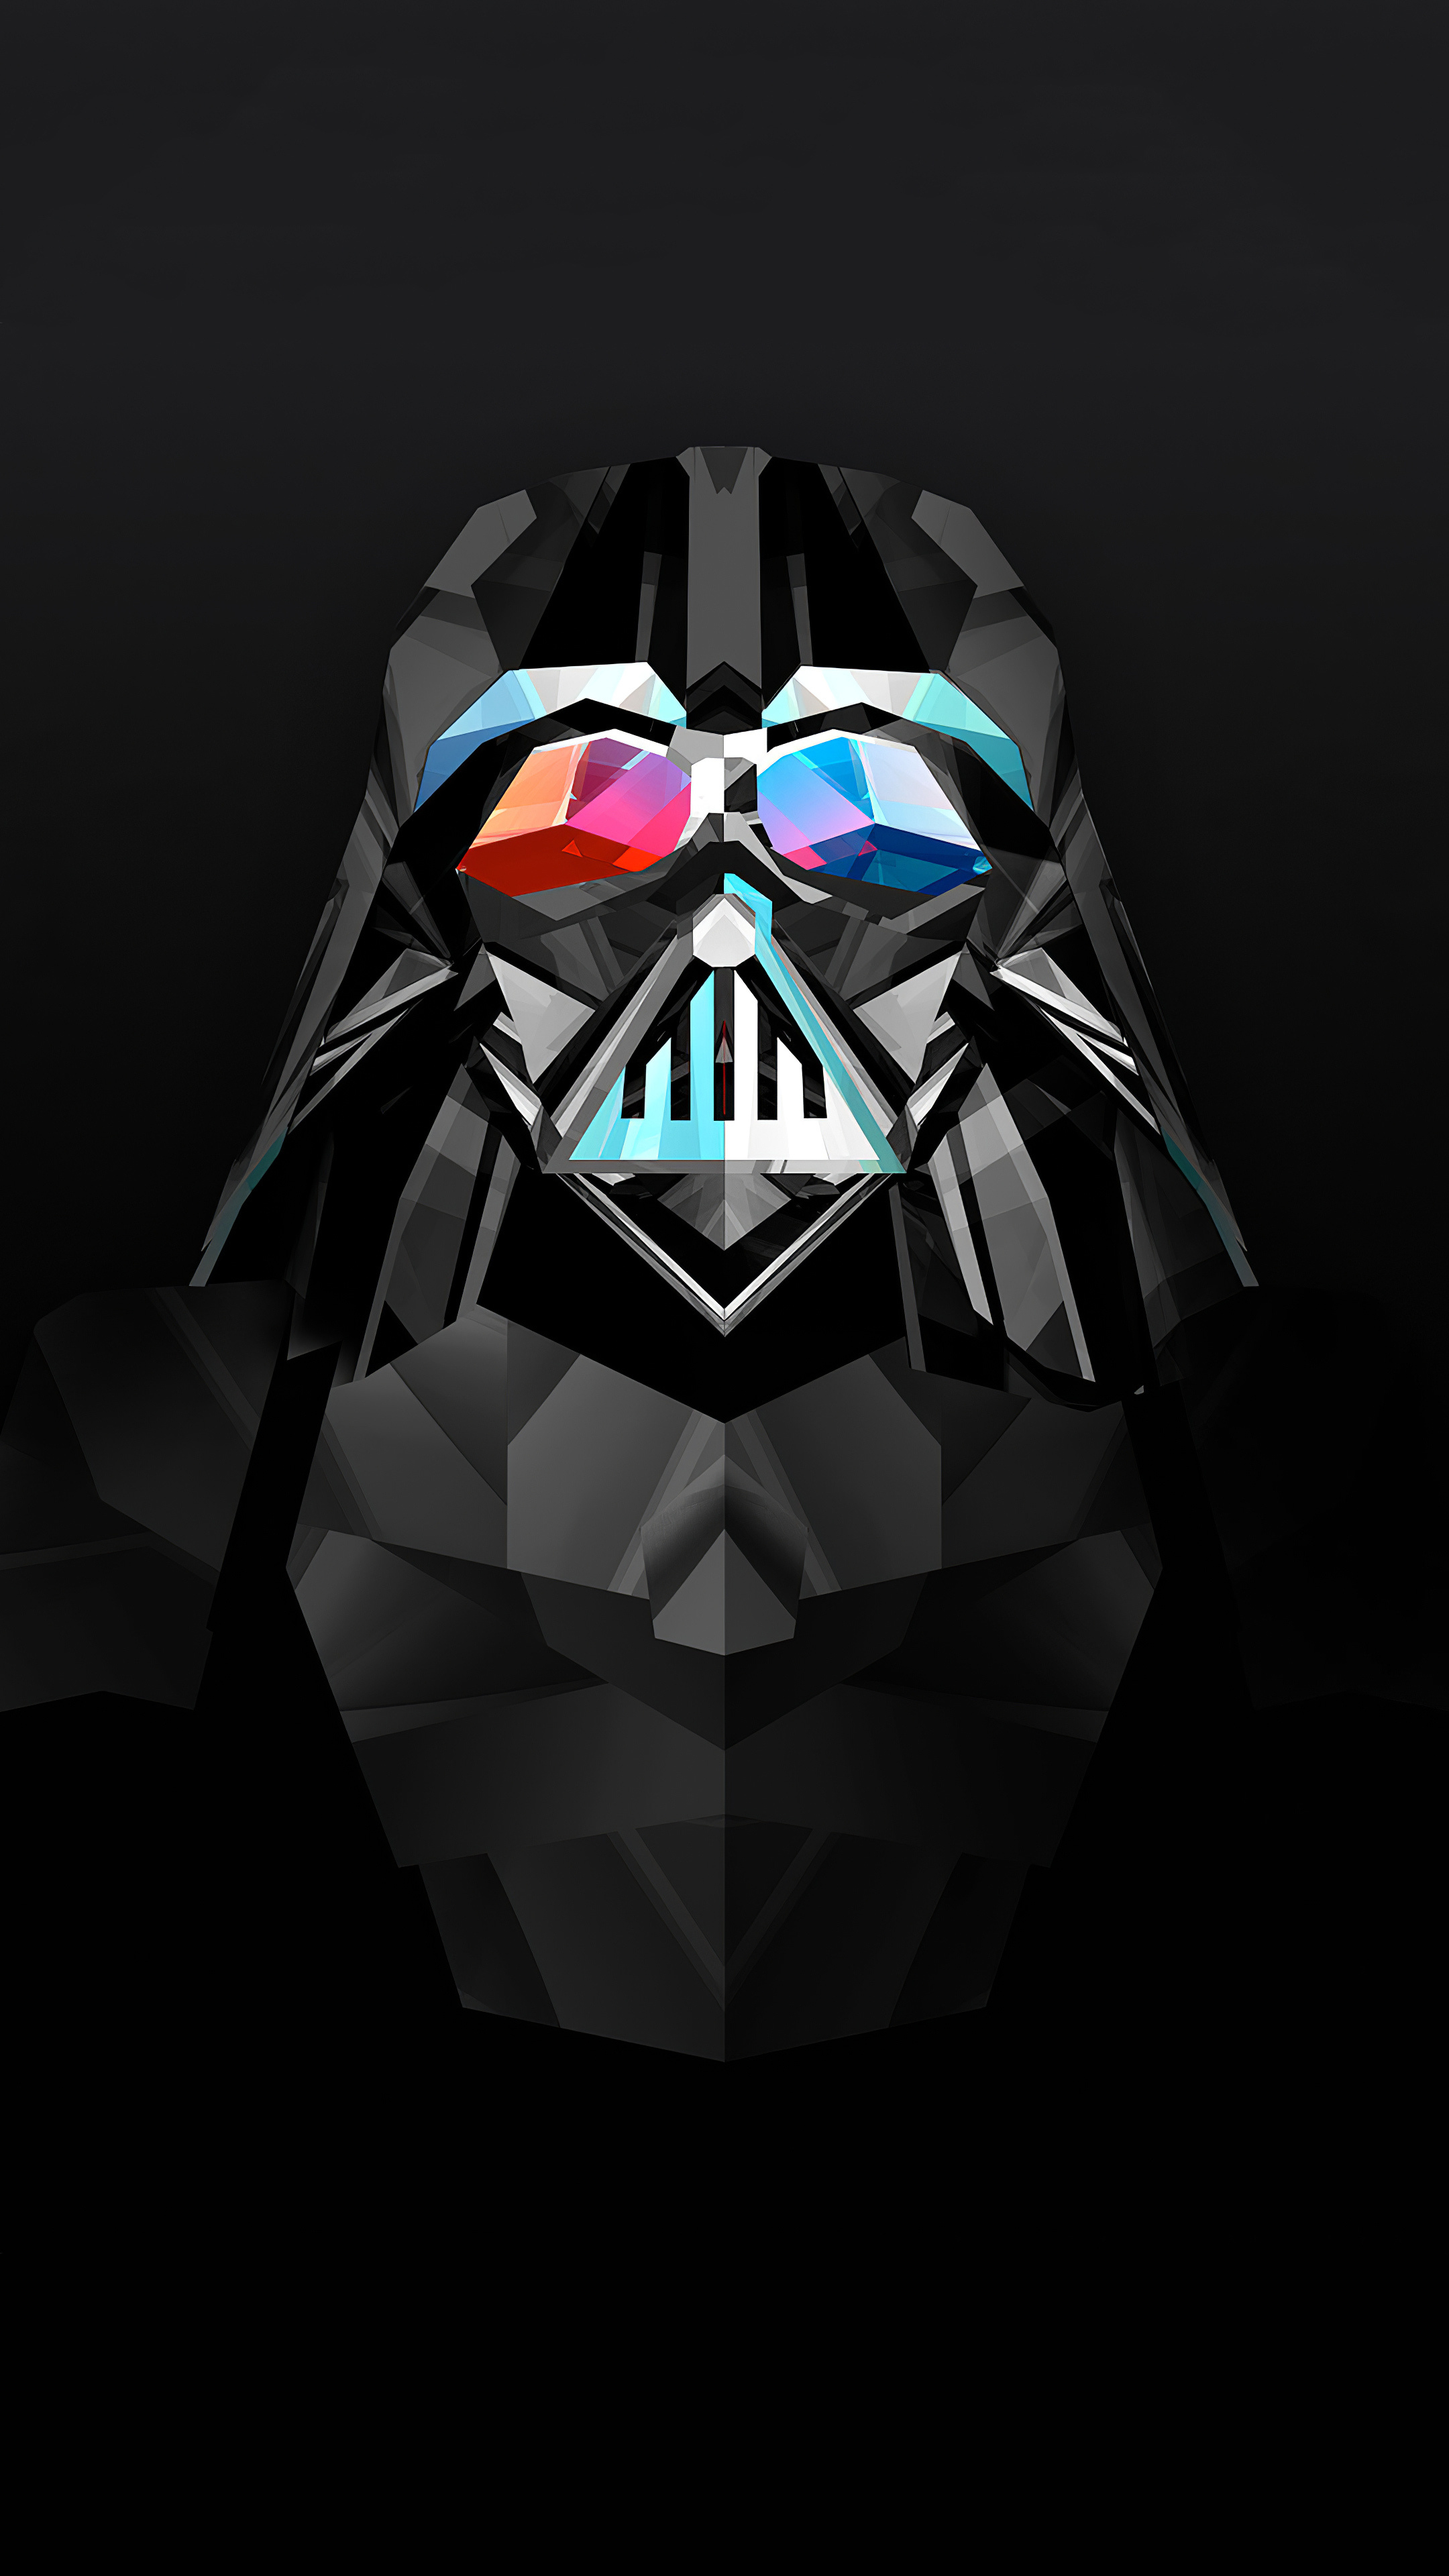 Justin Maller, Darth Vader, Star Wars art, 2160x3840 4K Phone